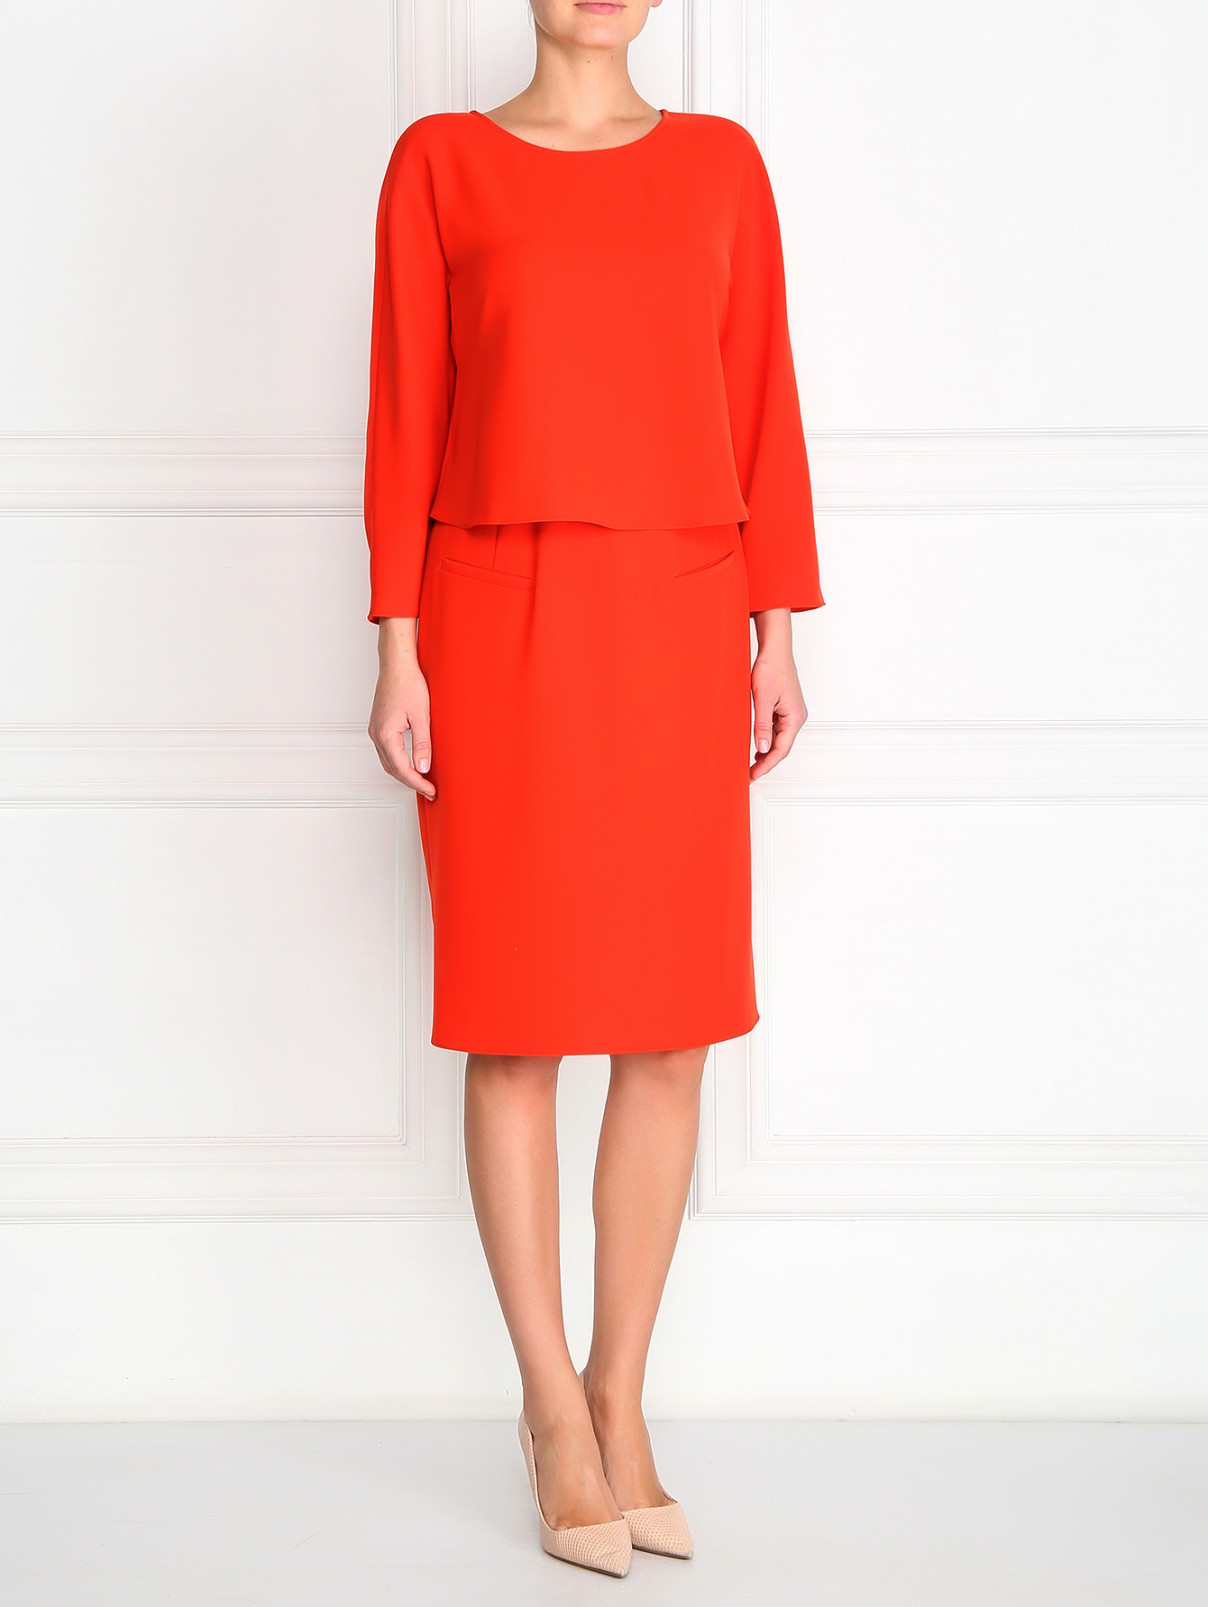 Платье прямого фасона с боковыми карманами Armani Collezioni  –  Модель Общий вид  – Цвет:  Красный